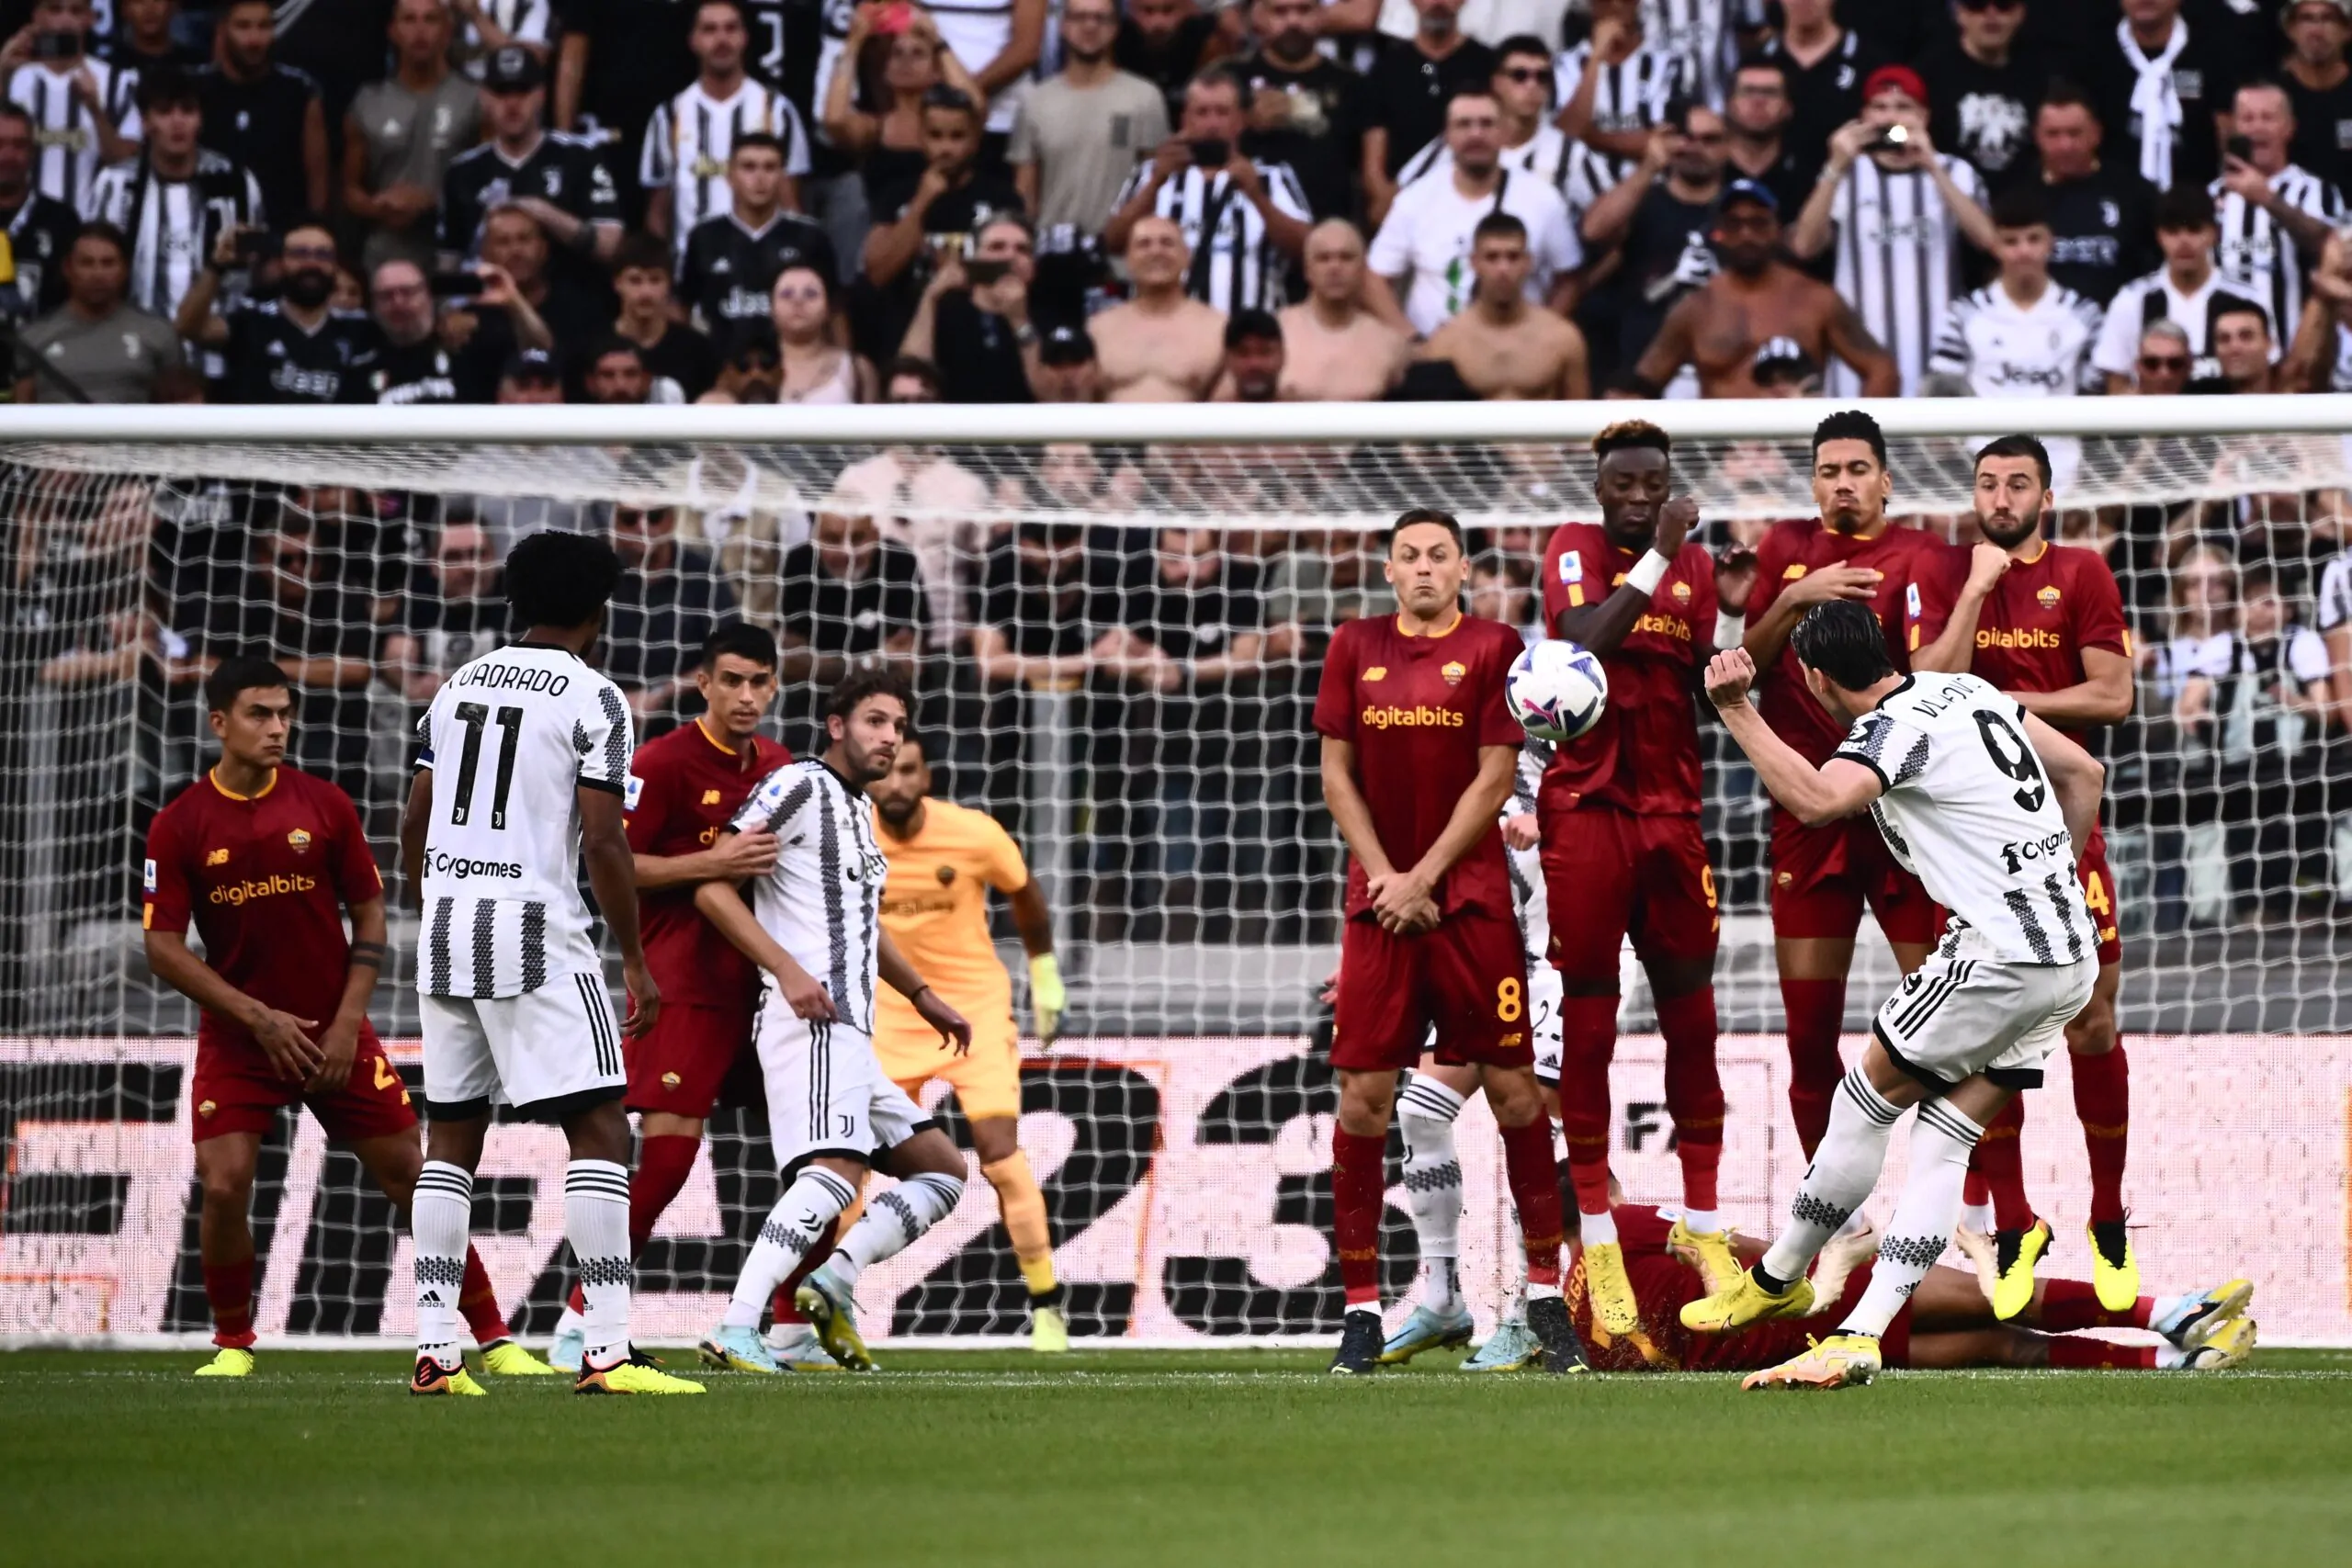 Il giornalista punzecchia la Juventus: “Contro la Roma un match di livello mediocre”